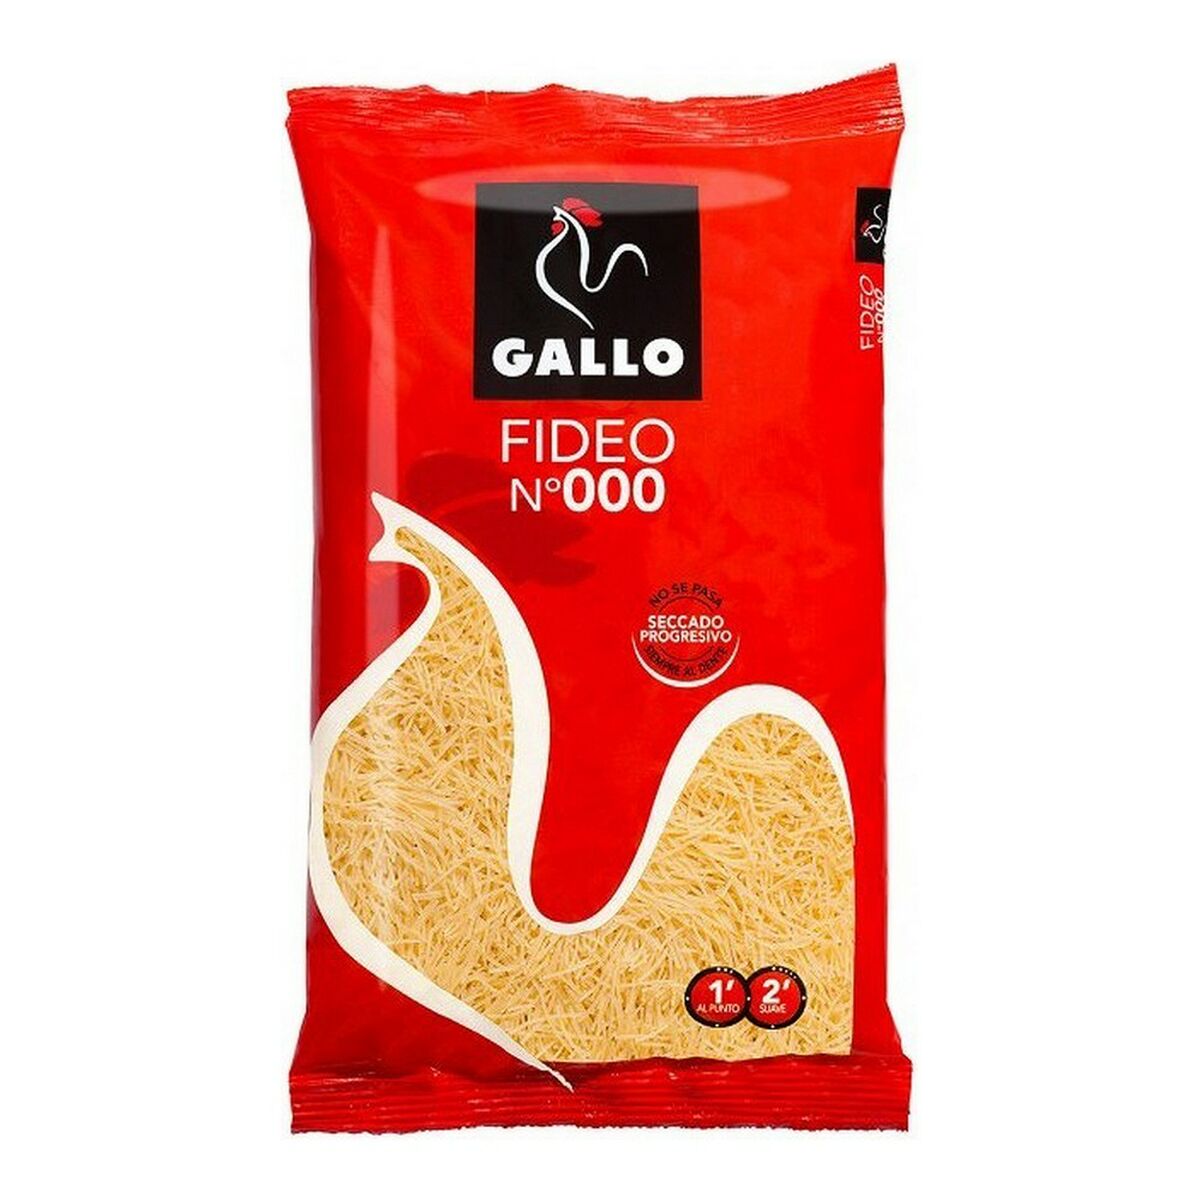 Noodles Gallo Nº000 (250 g)